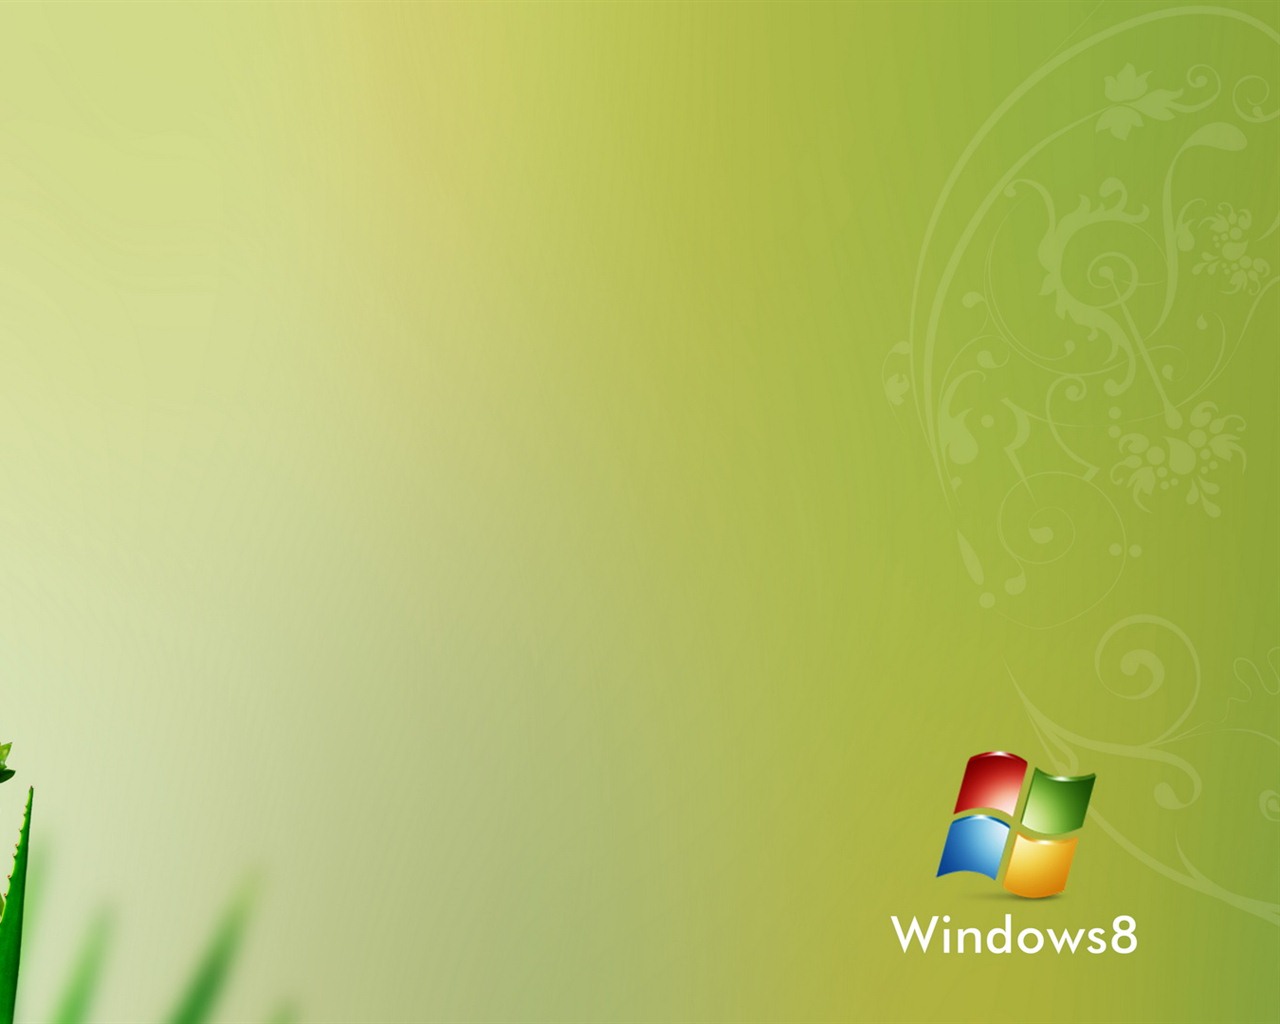 Windows 8 theme wallpaper (1) #10 - 1280x1024